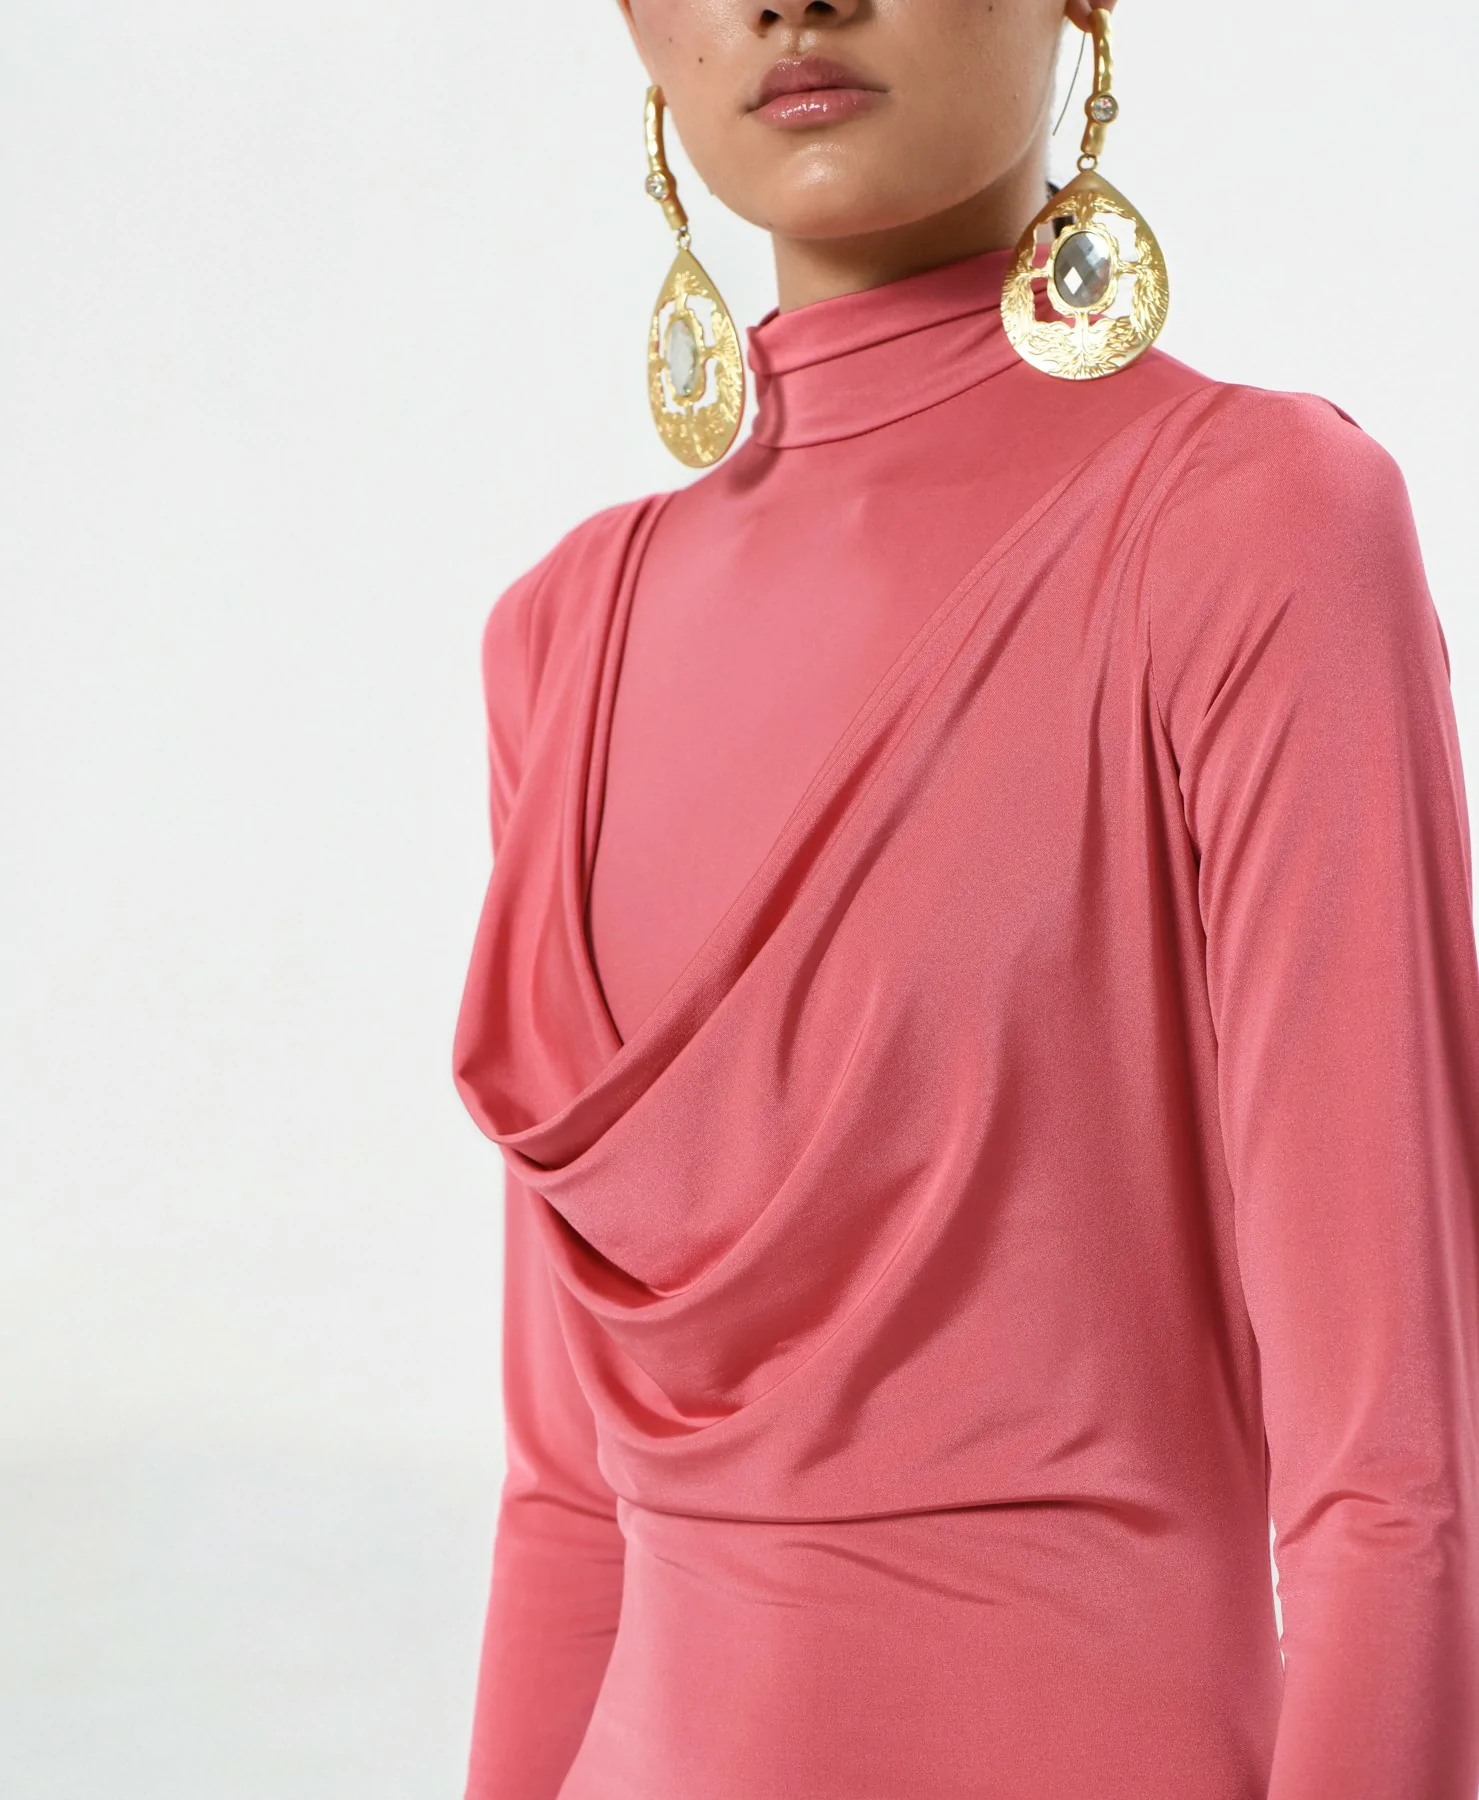 Detalle del escote fruncido y la cremallera dorada del vestido Rosa Tucana de C L A R O Couture.